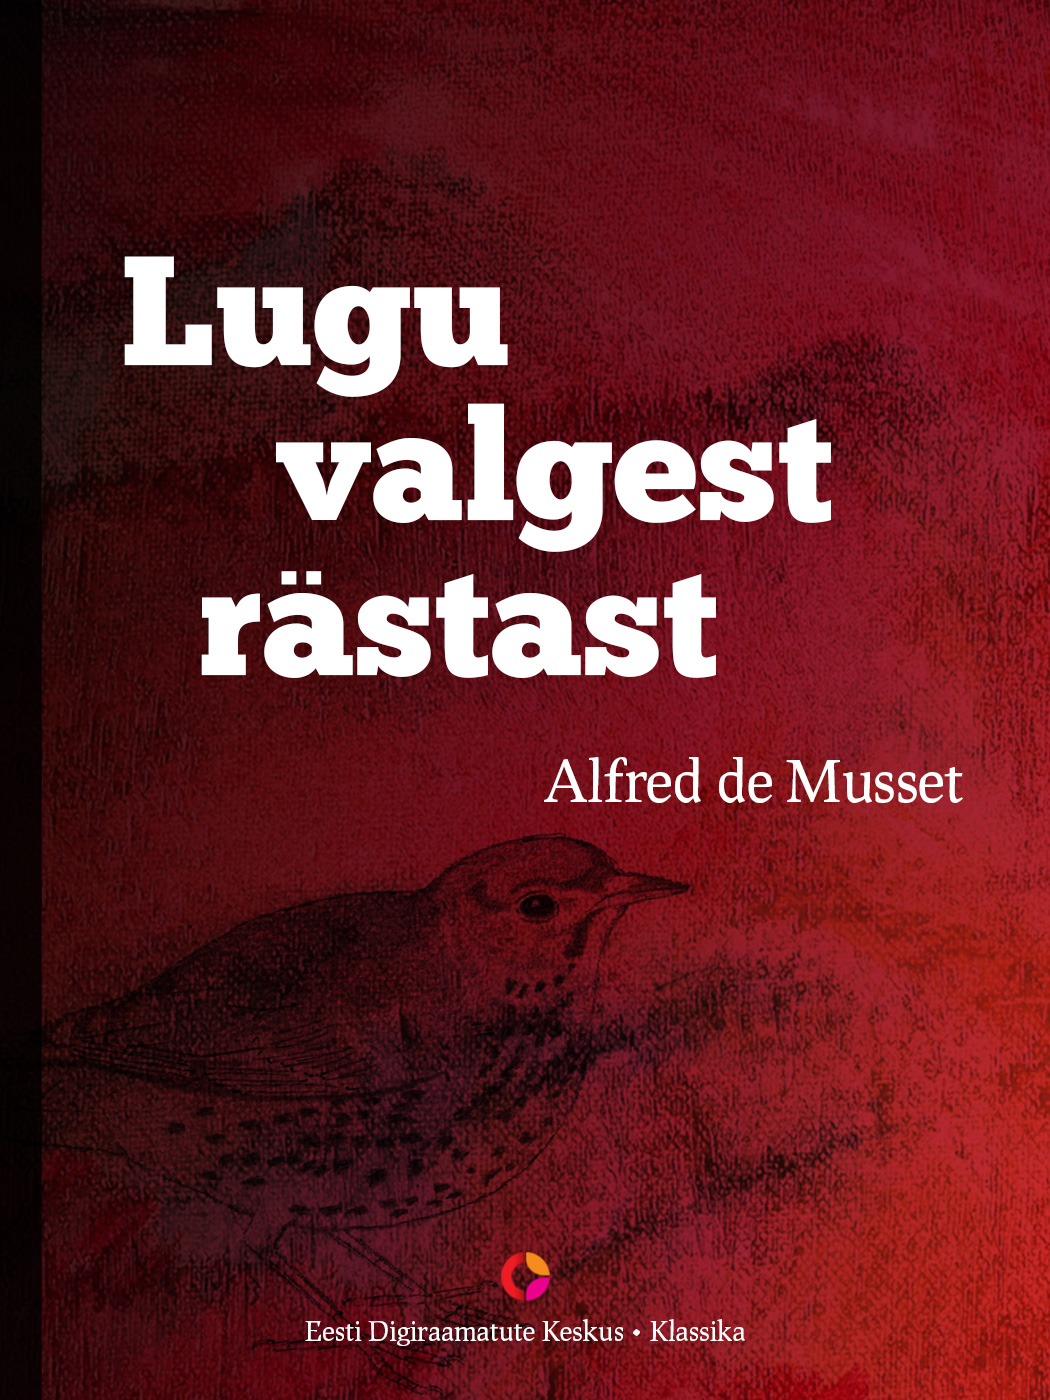 Книга Lugu valgest rästast из серии , созданная Alfred de Musset, может относится к жанру Зарубежная классика, Литература 19 века, Зарубежная старинная литература. Стоимость электронной книги Lugu valgest rästast с идентификатором 21184540 составляет 298.37 руб.